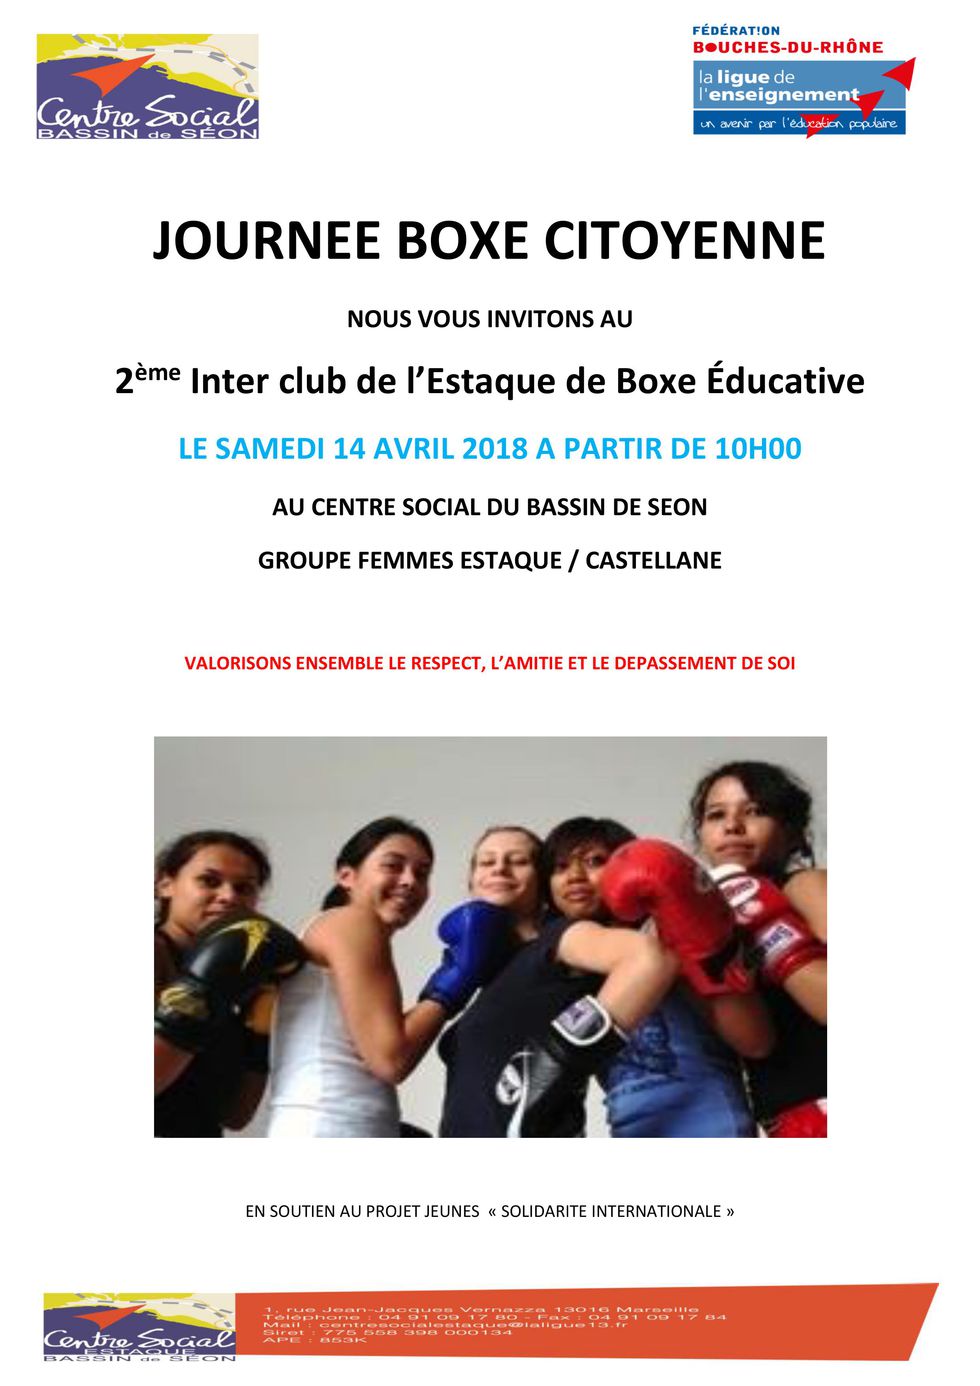 JOURNEE BOXE CITOYENNE FEMMES 2018